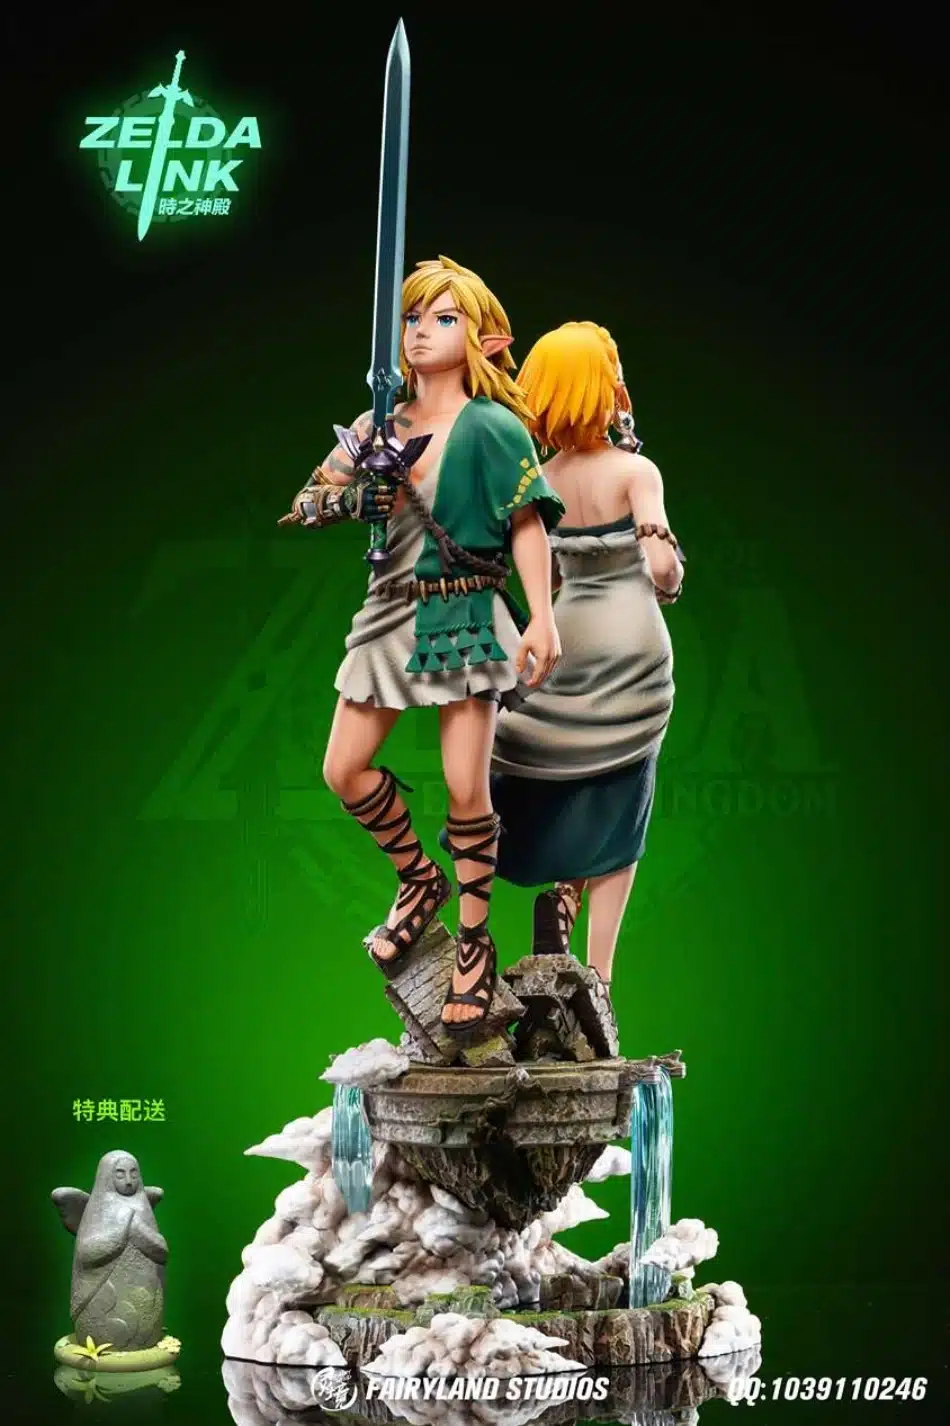 Zelda Y Link Son Recreados En Asombrosas Figuras